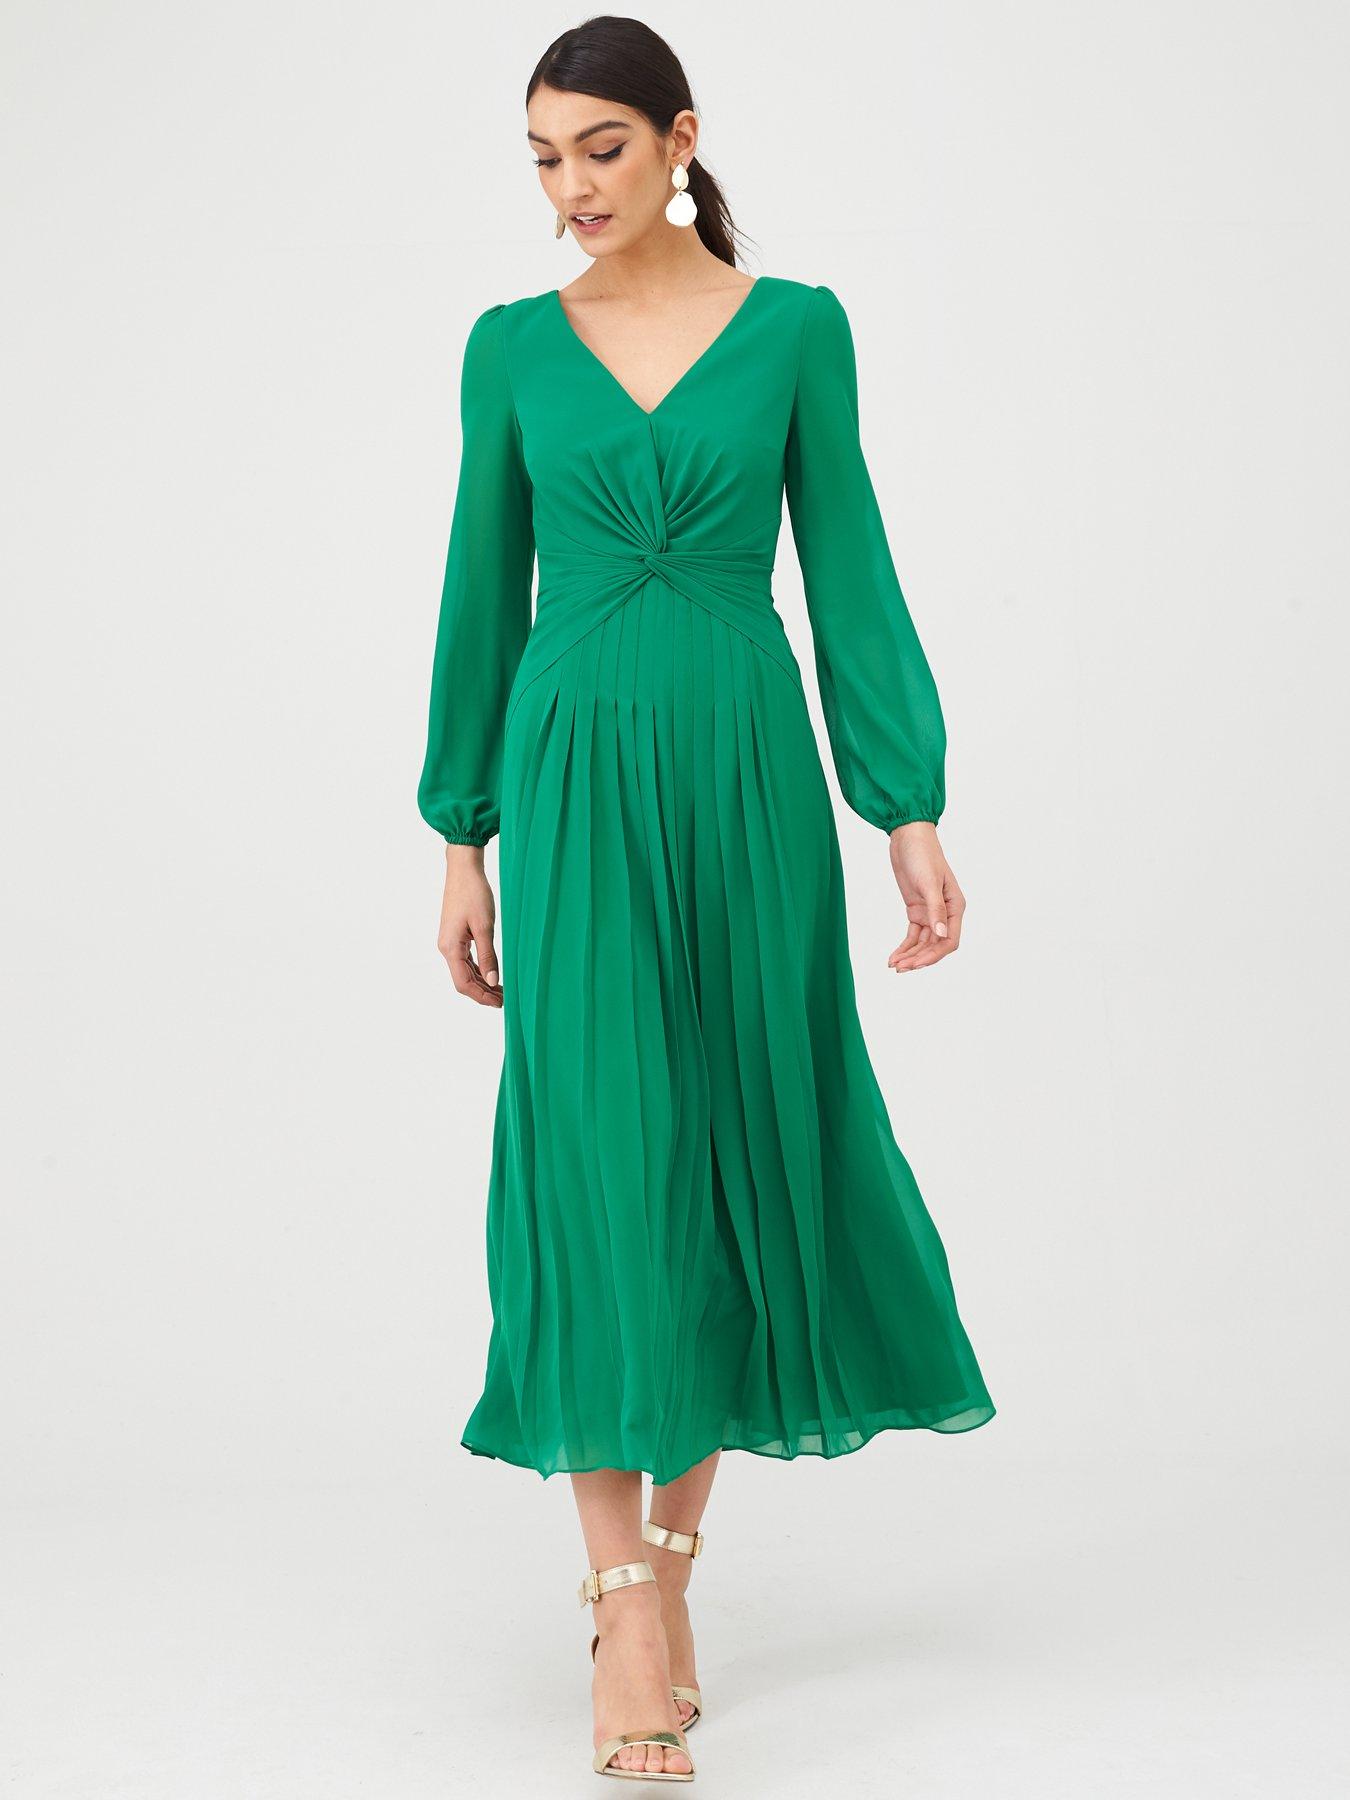 littlewoods green dress